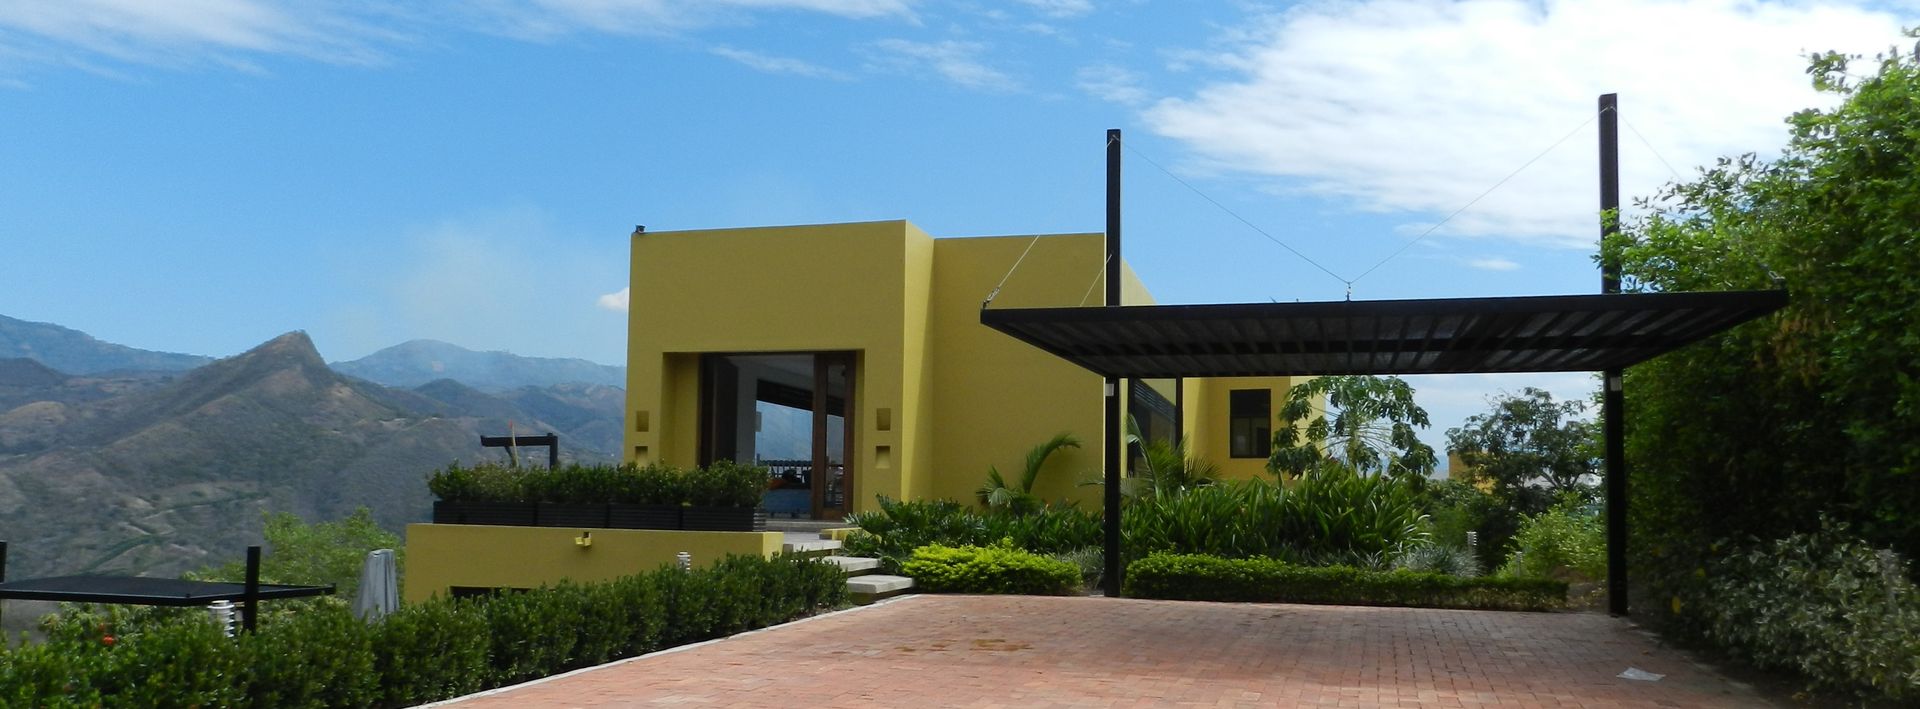 Vivienda Campestre - Acosta Anapoima , Arquitectos y Entorno S.A.S Arquitectos y Entorno S.A.S Casas de estilo minimalista